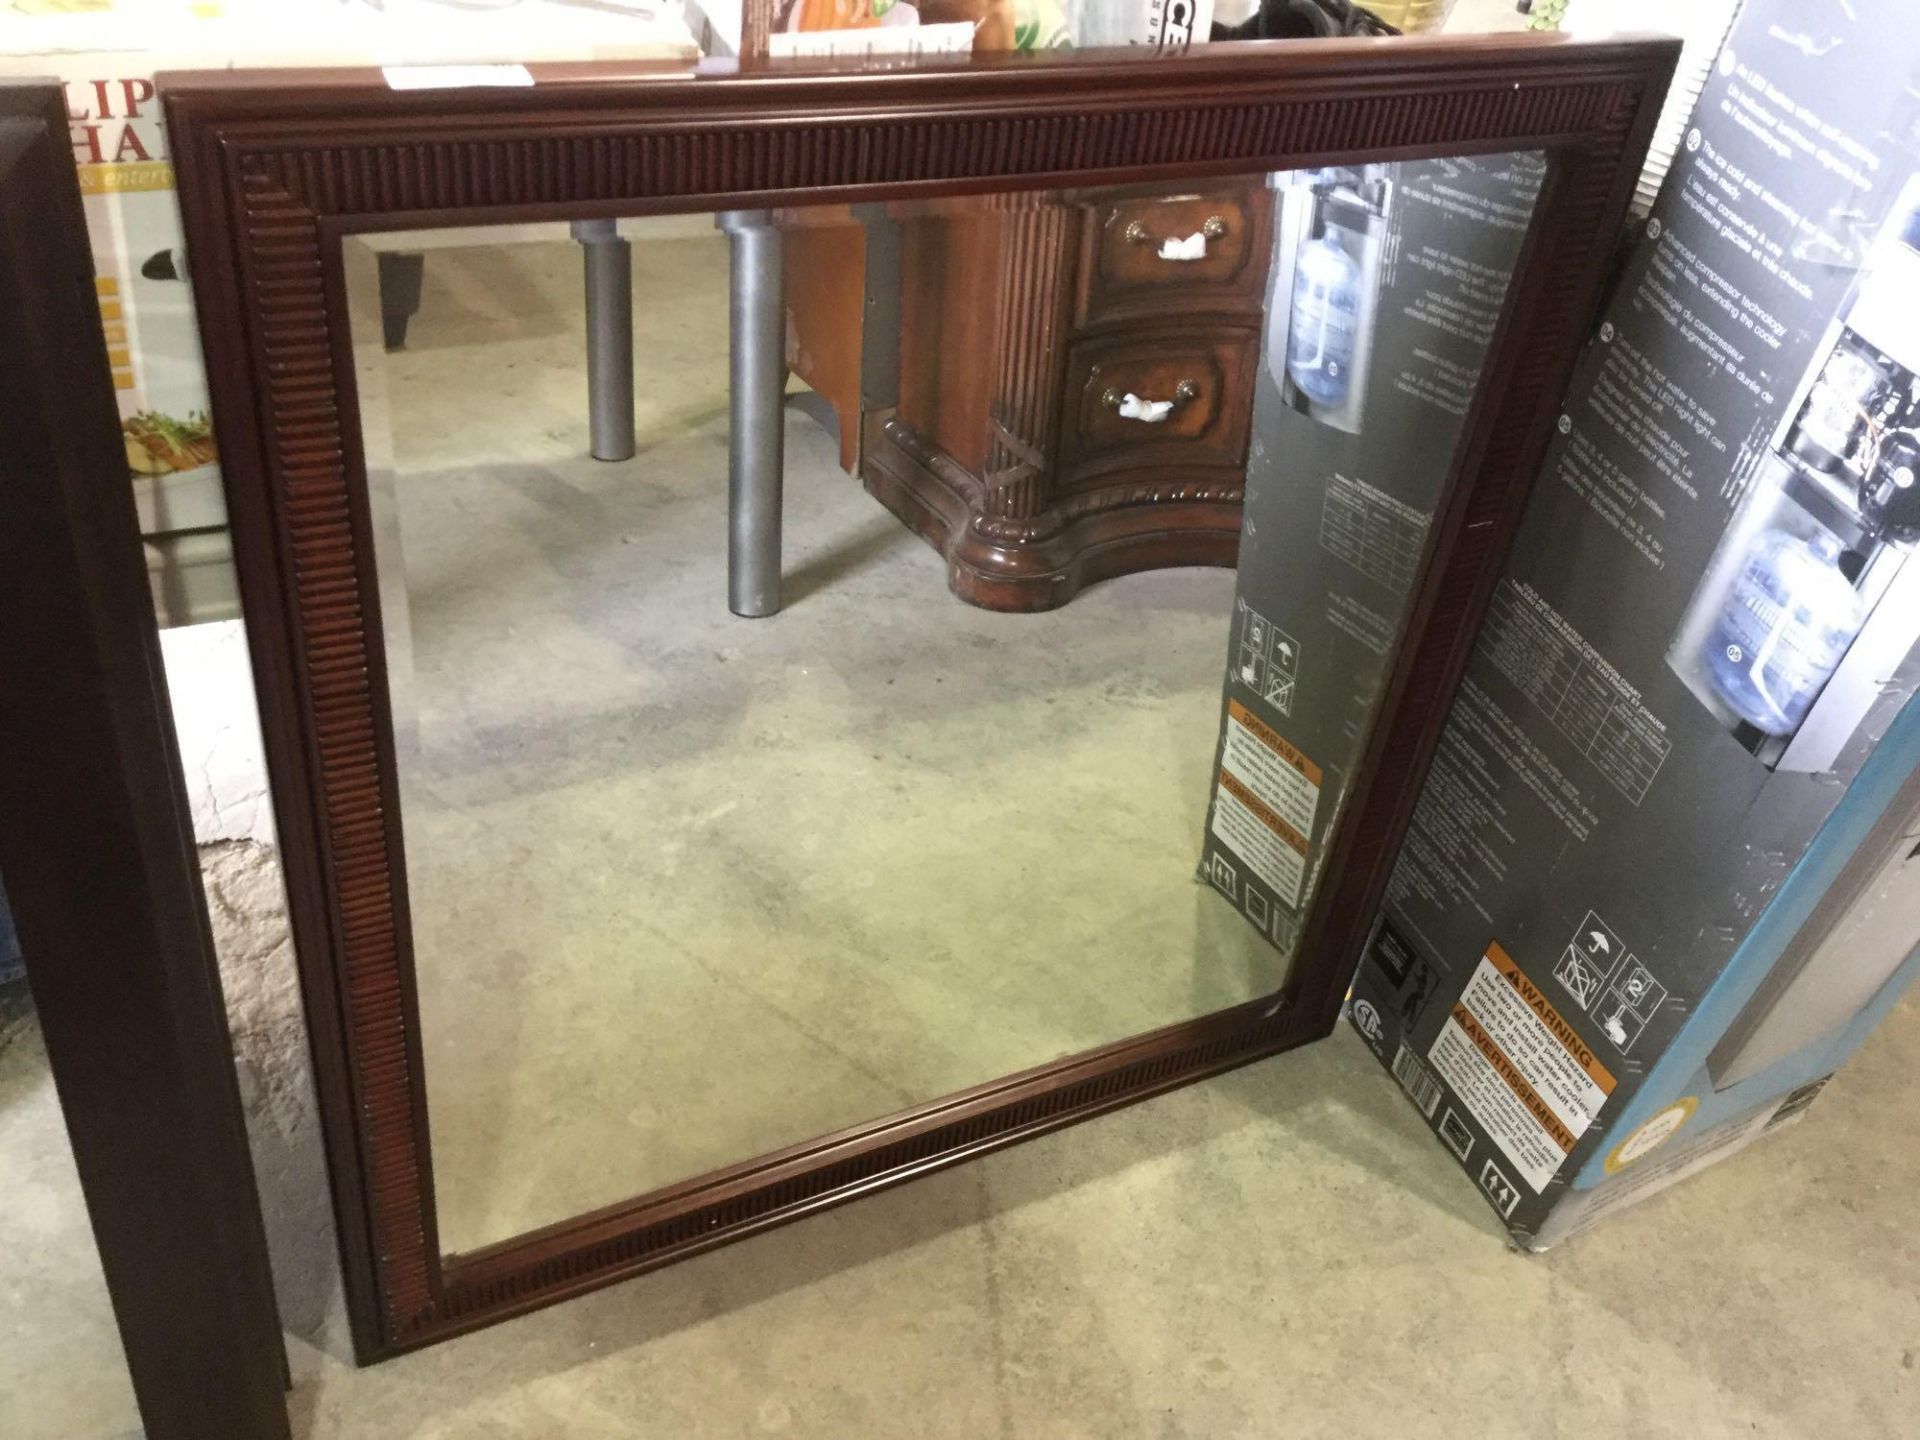 39" x 39" framed mirror